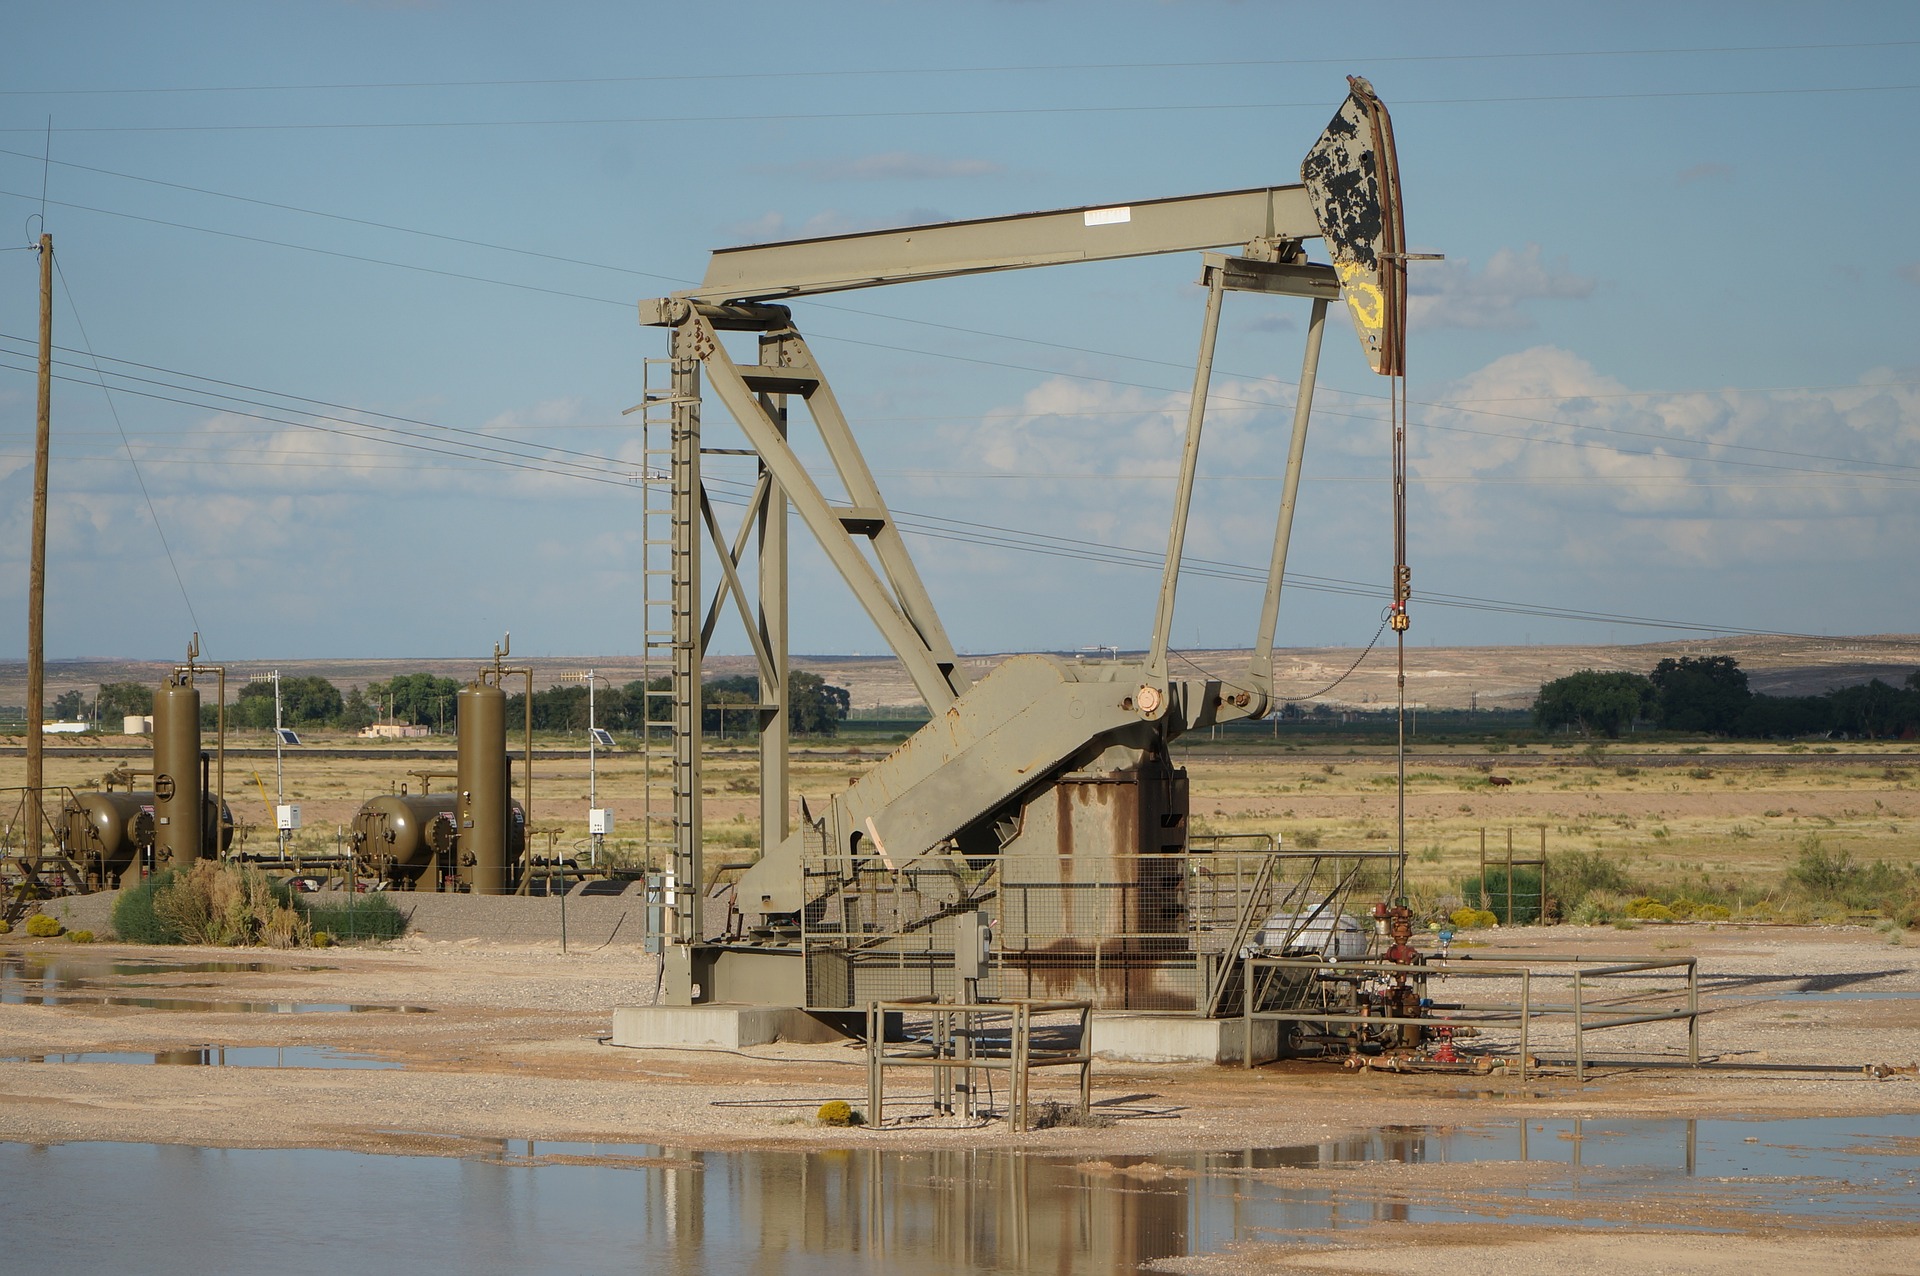 An oil pump standing in a flat desert